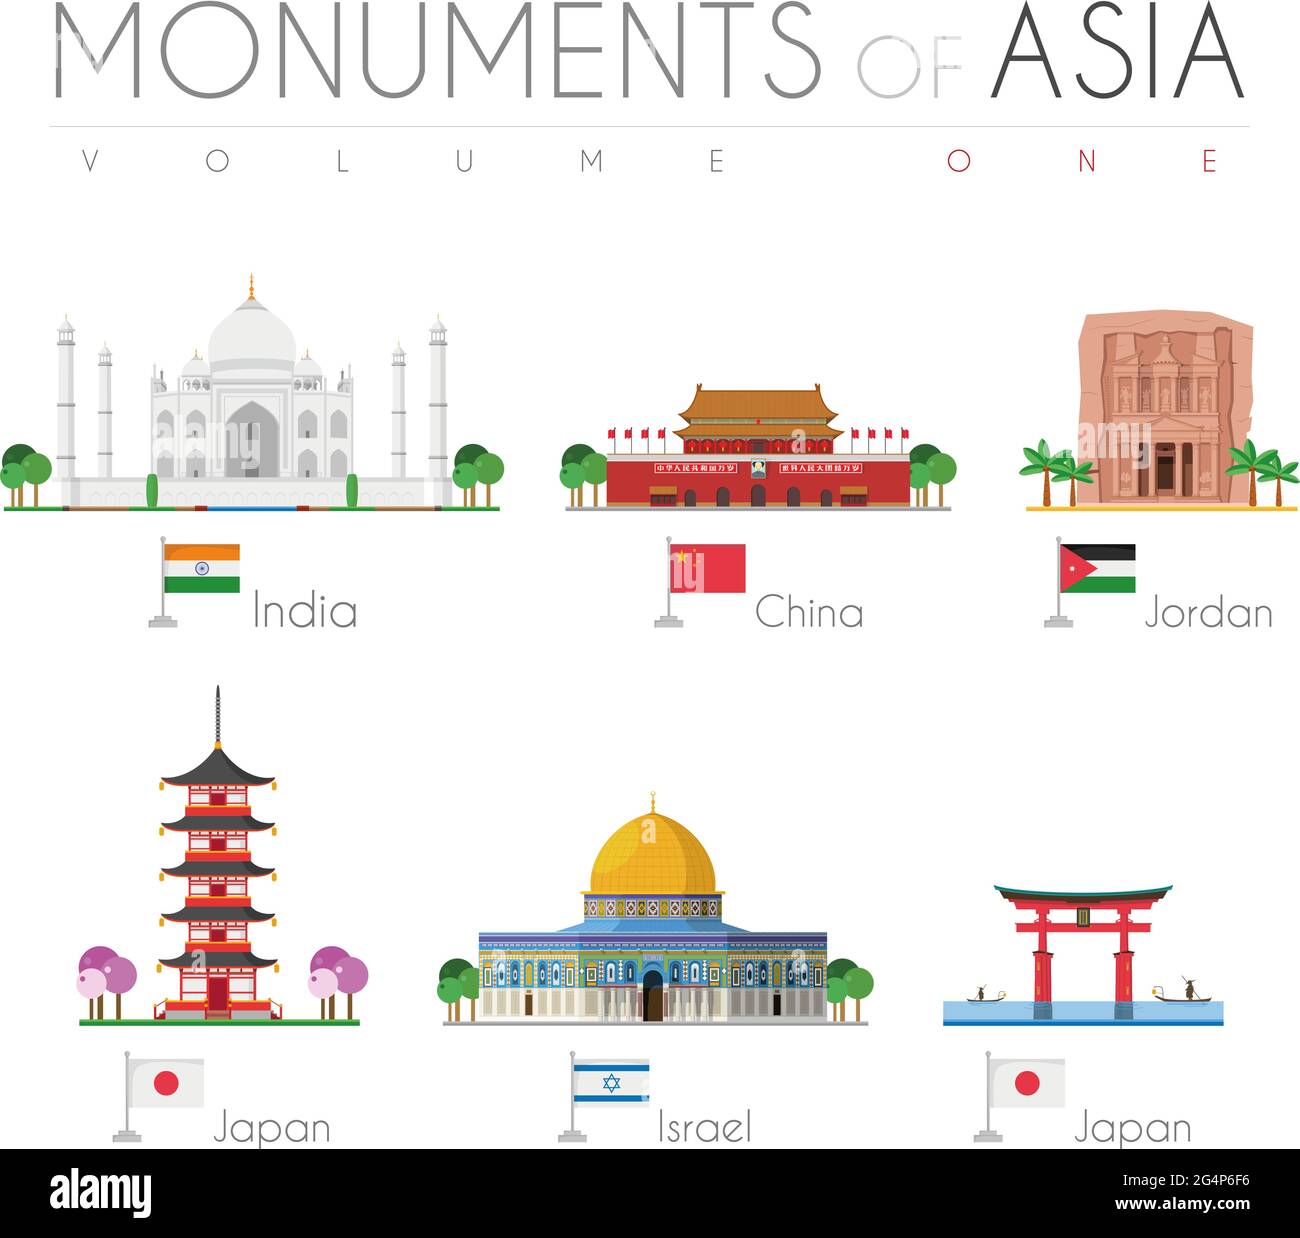 Monumenti dell'Asia in stile cartoon Volume 1: Taj Mahal (India), Città  Proibita (Cina), Petra (Giordania), Pagoda di Gojunoto (Giappone), cupola  della roccia (ISR Immagine e Vettoriale - Alamy